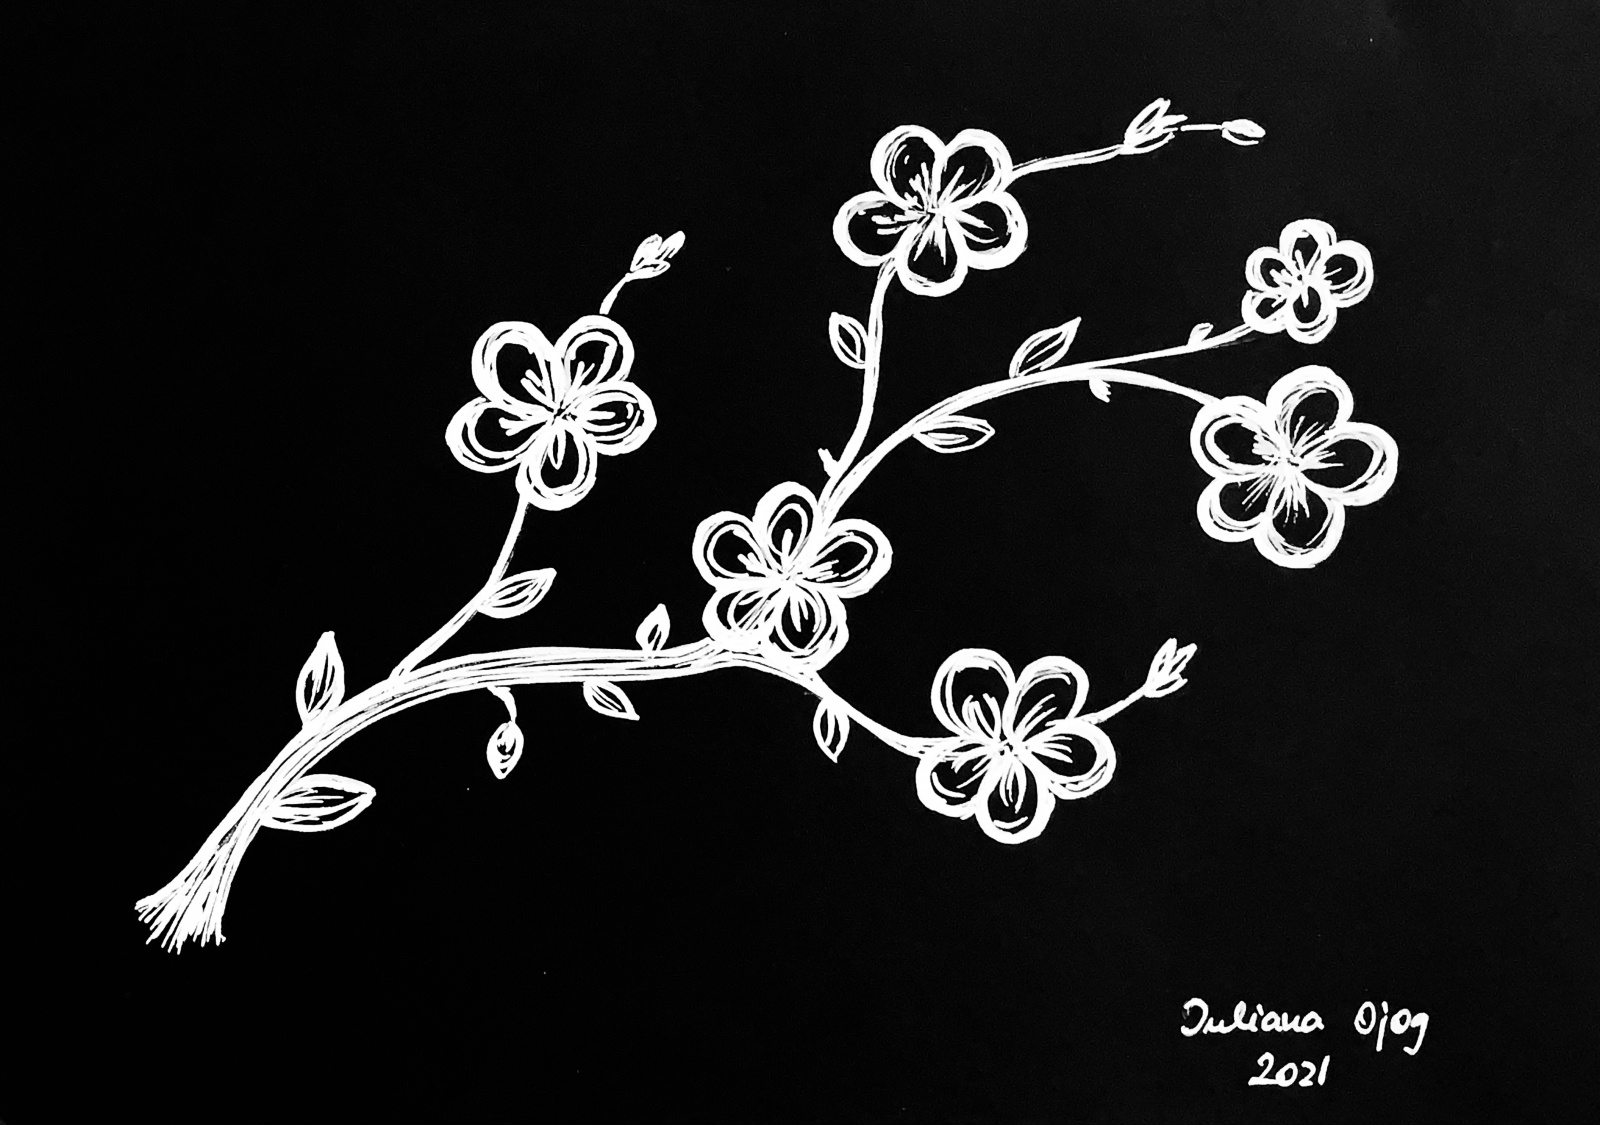 Papierzeichnung, weiß auf schwarz: "Apfelblüte"